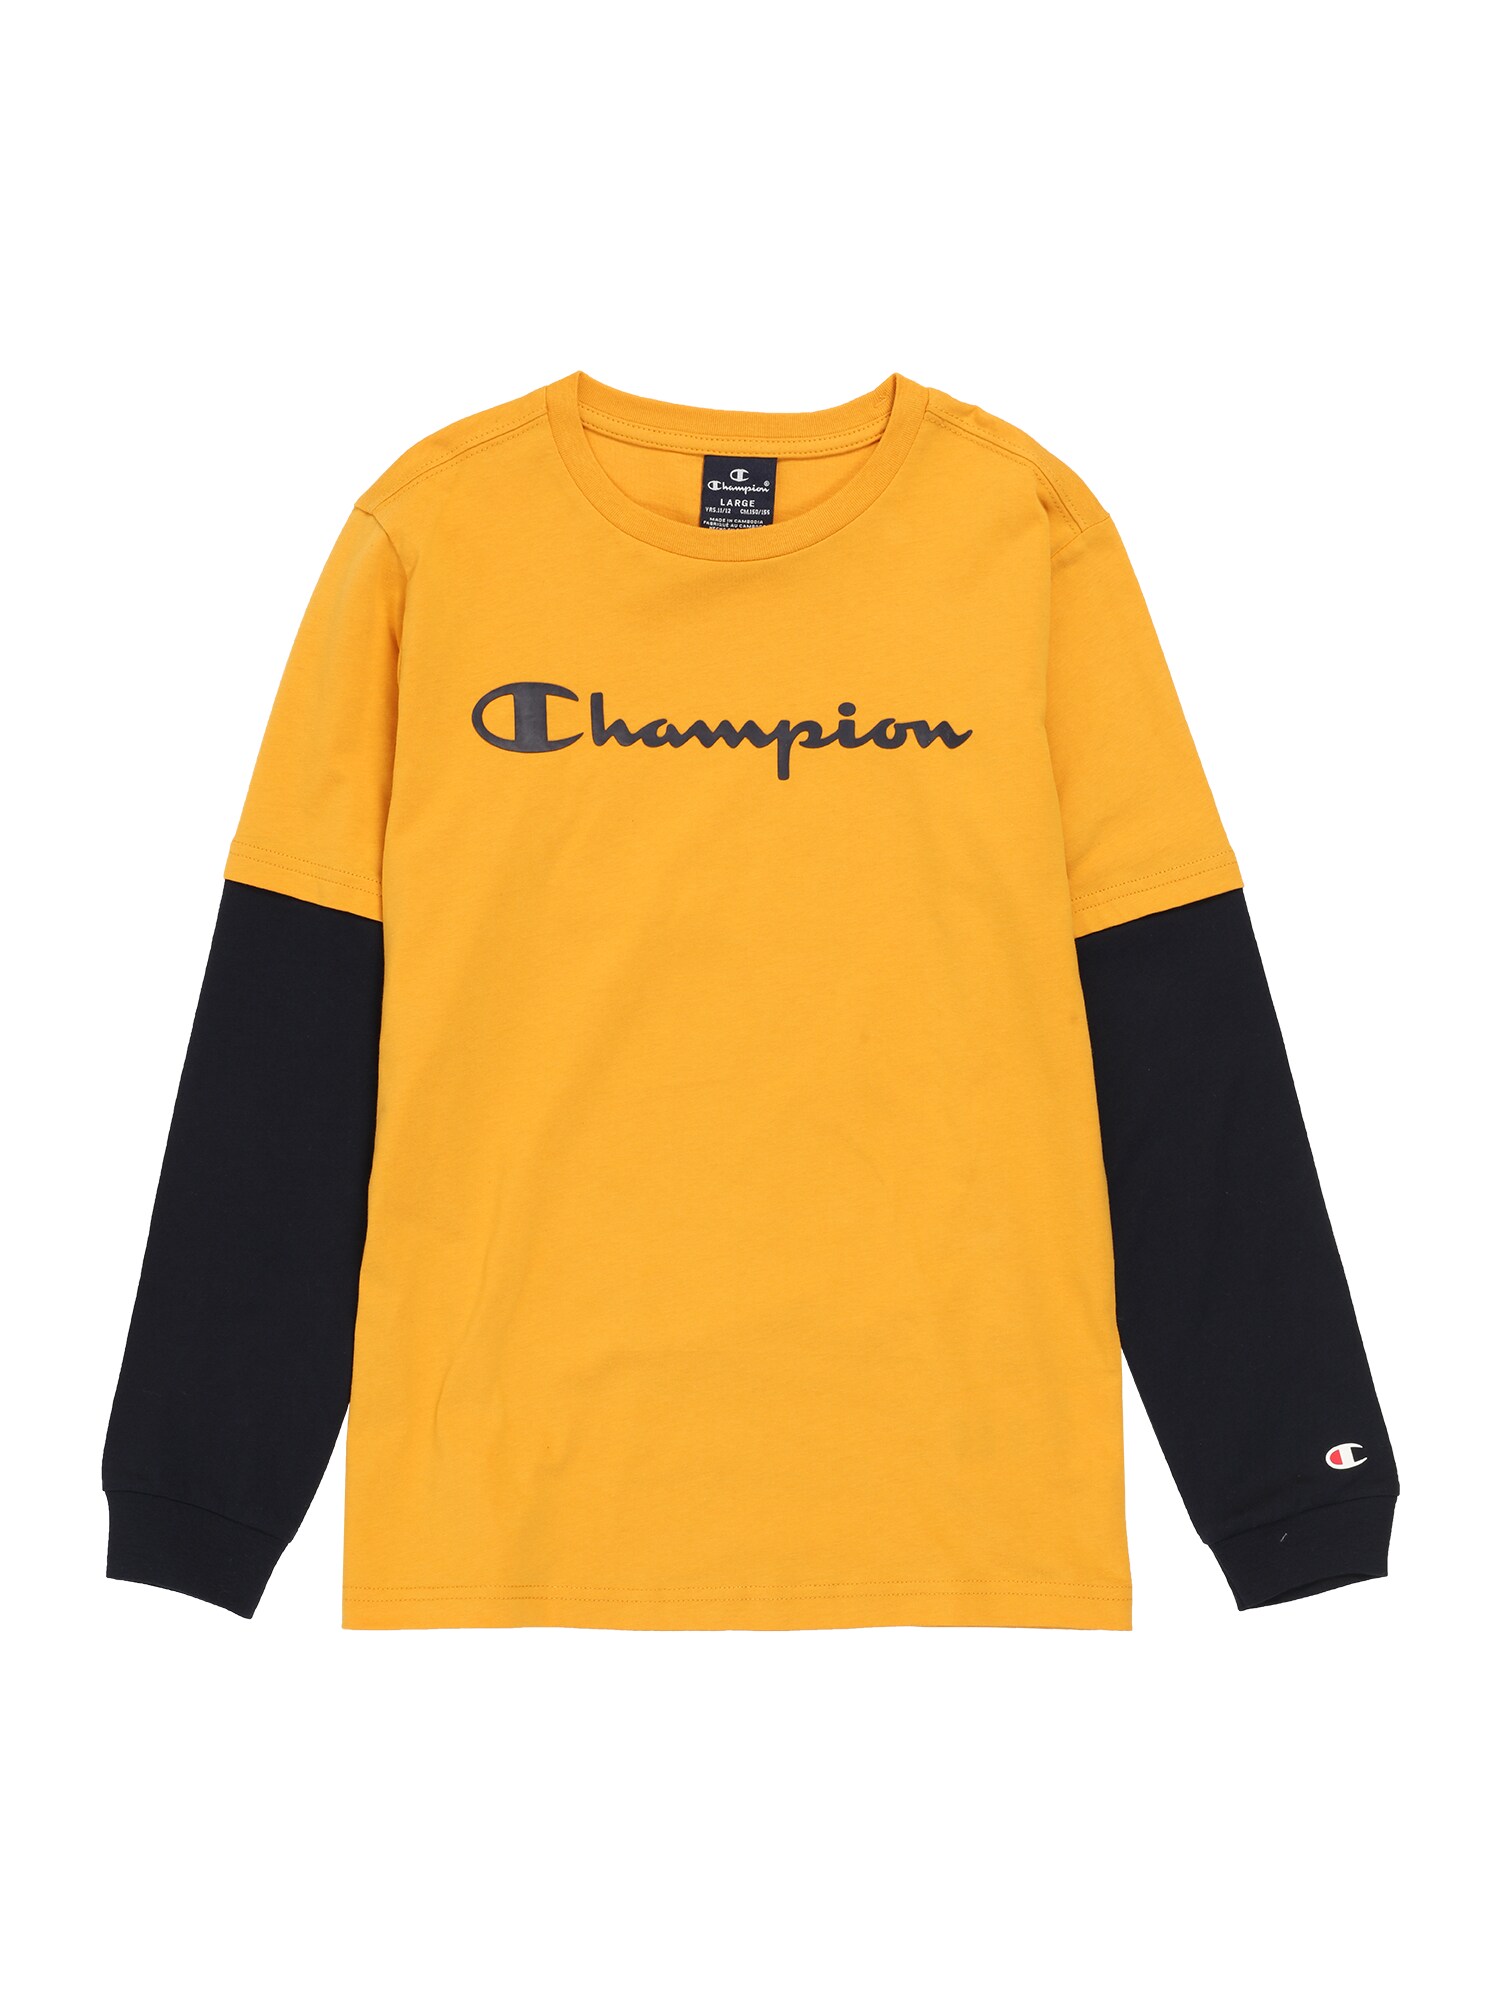 Champion Authentic Athletic Apparel Marškinėliai  rusvai oranžinė / juoda